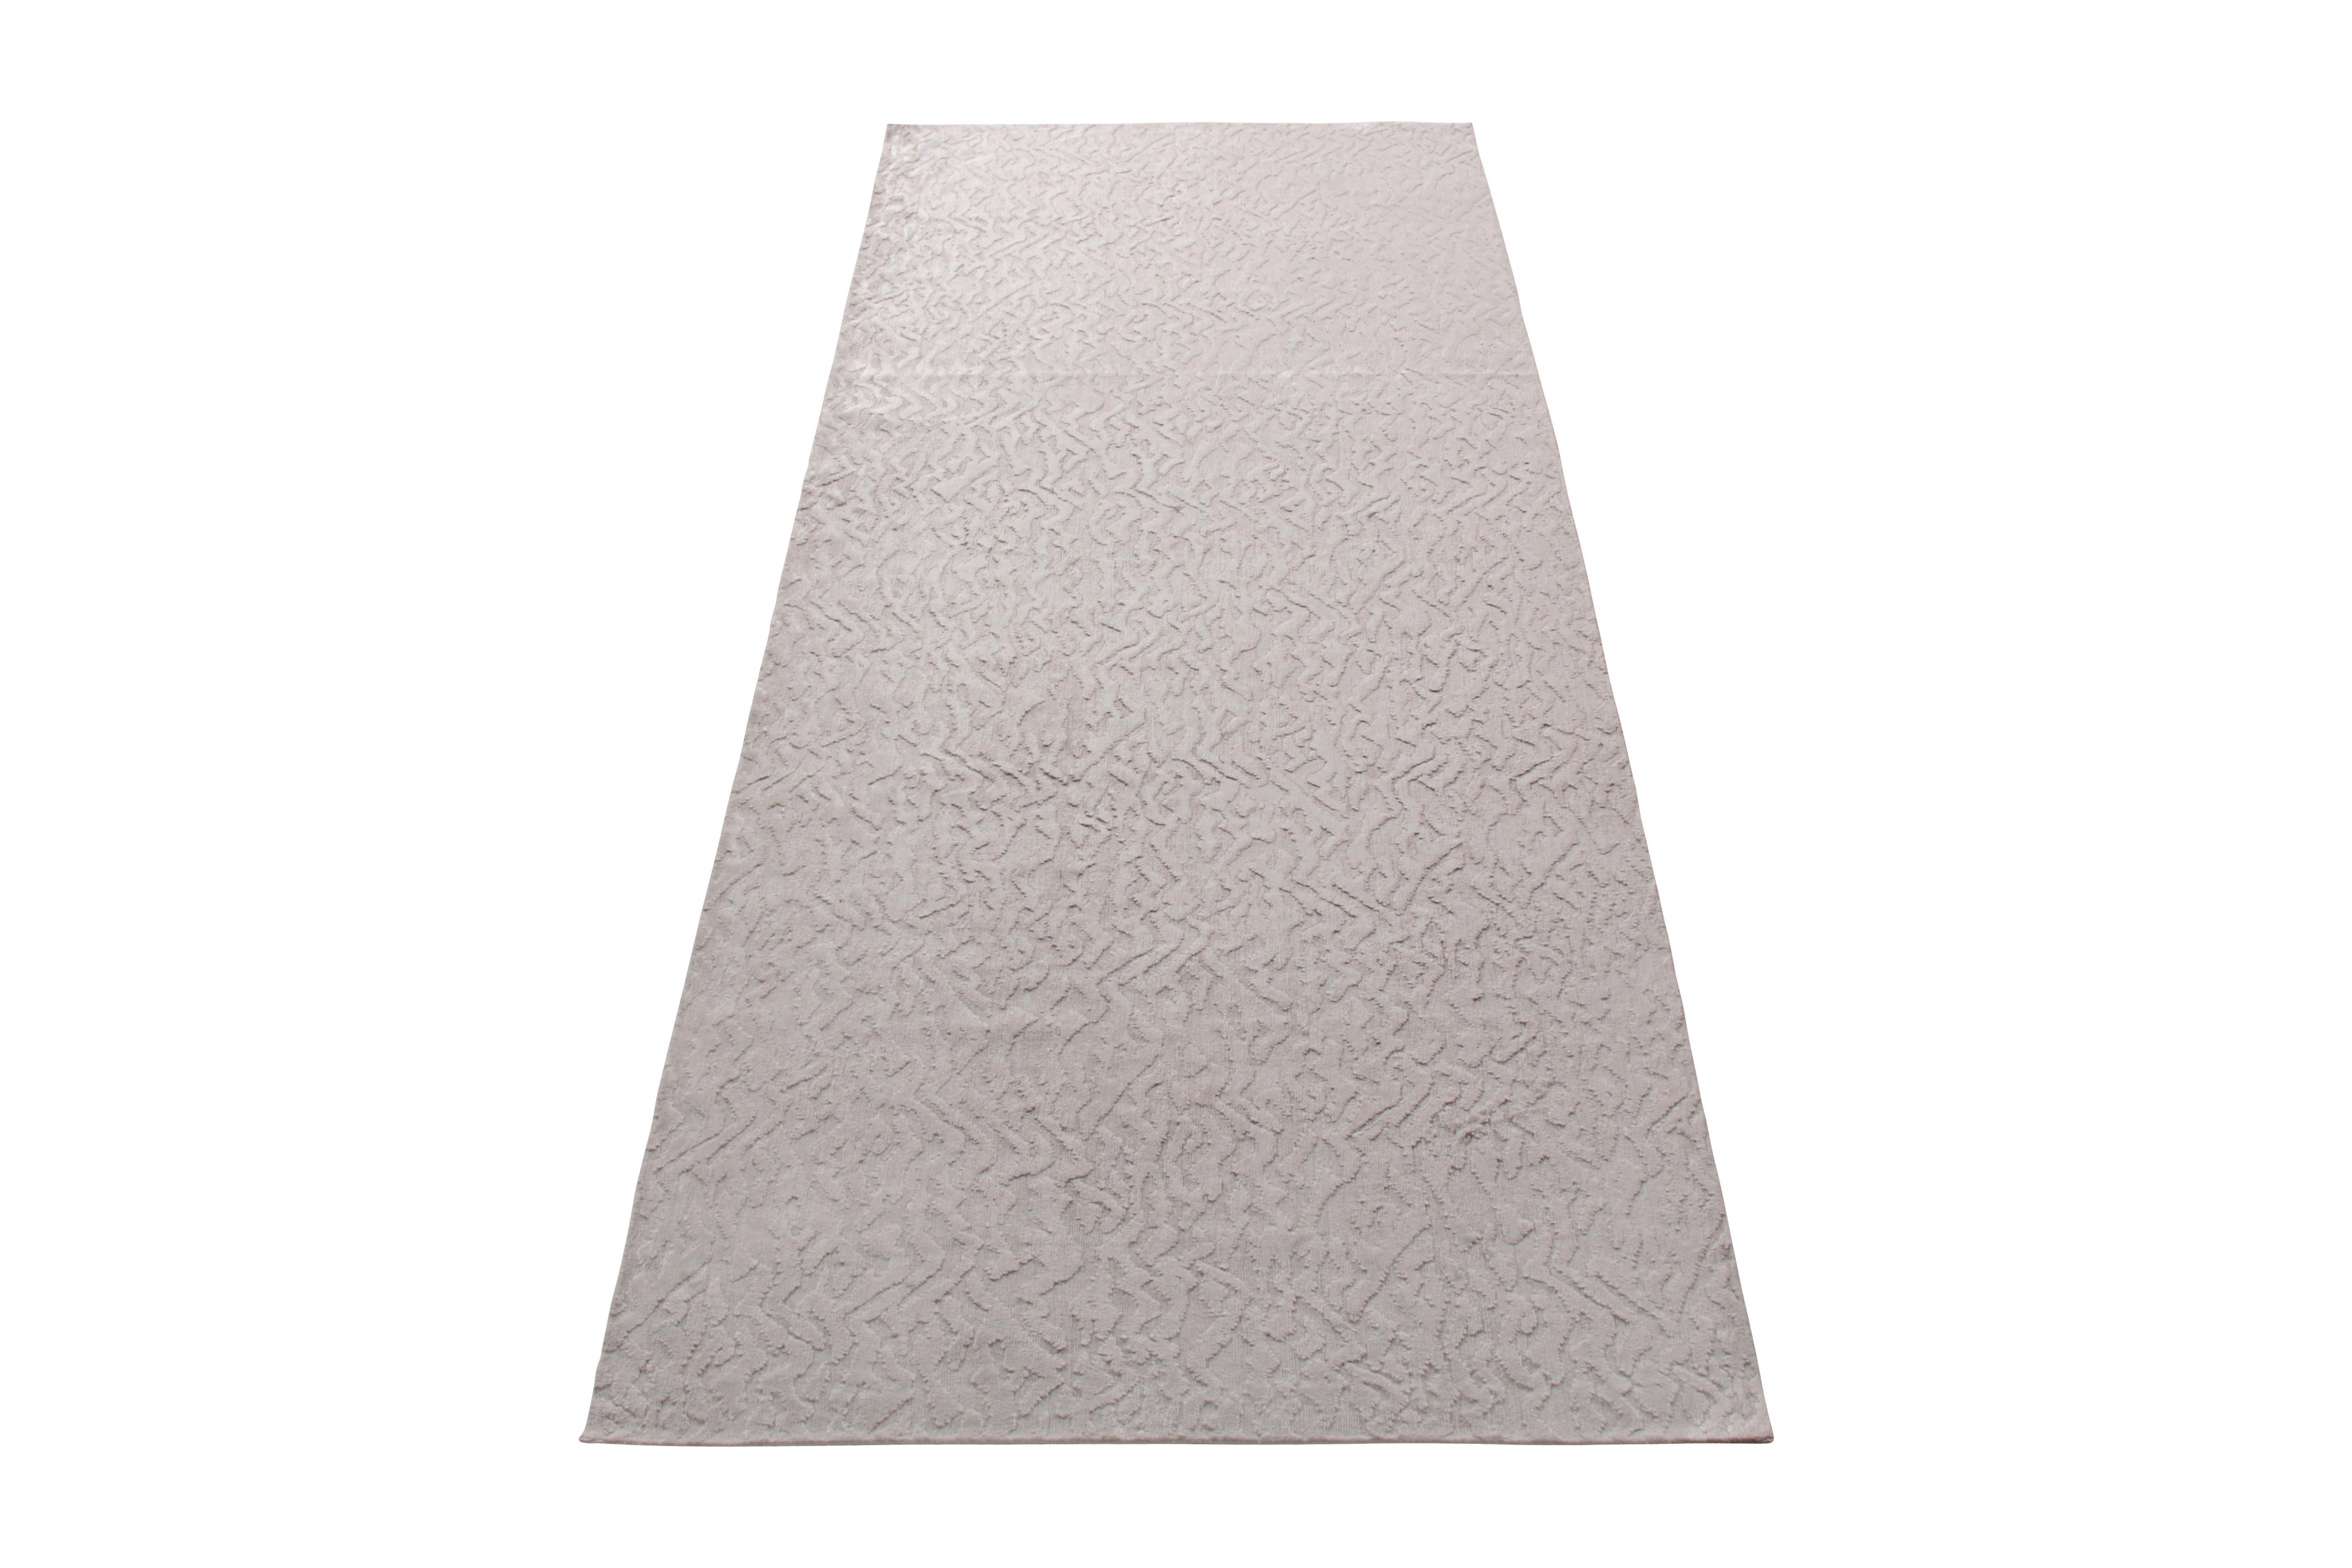 Dieser moderne Teppich aus der neuen und modernen Kollektion von Rug & Kilim zeichnet sich durch ein geometrisches Muster aus, das dem bequemen, vielseitigen silbergrauen Farbton einen subtilen Charakter verleiht - ergänzt durch den subtilen Glanz